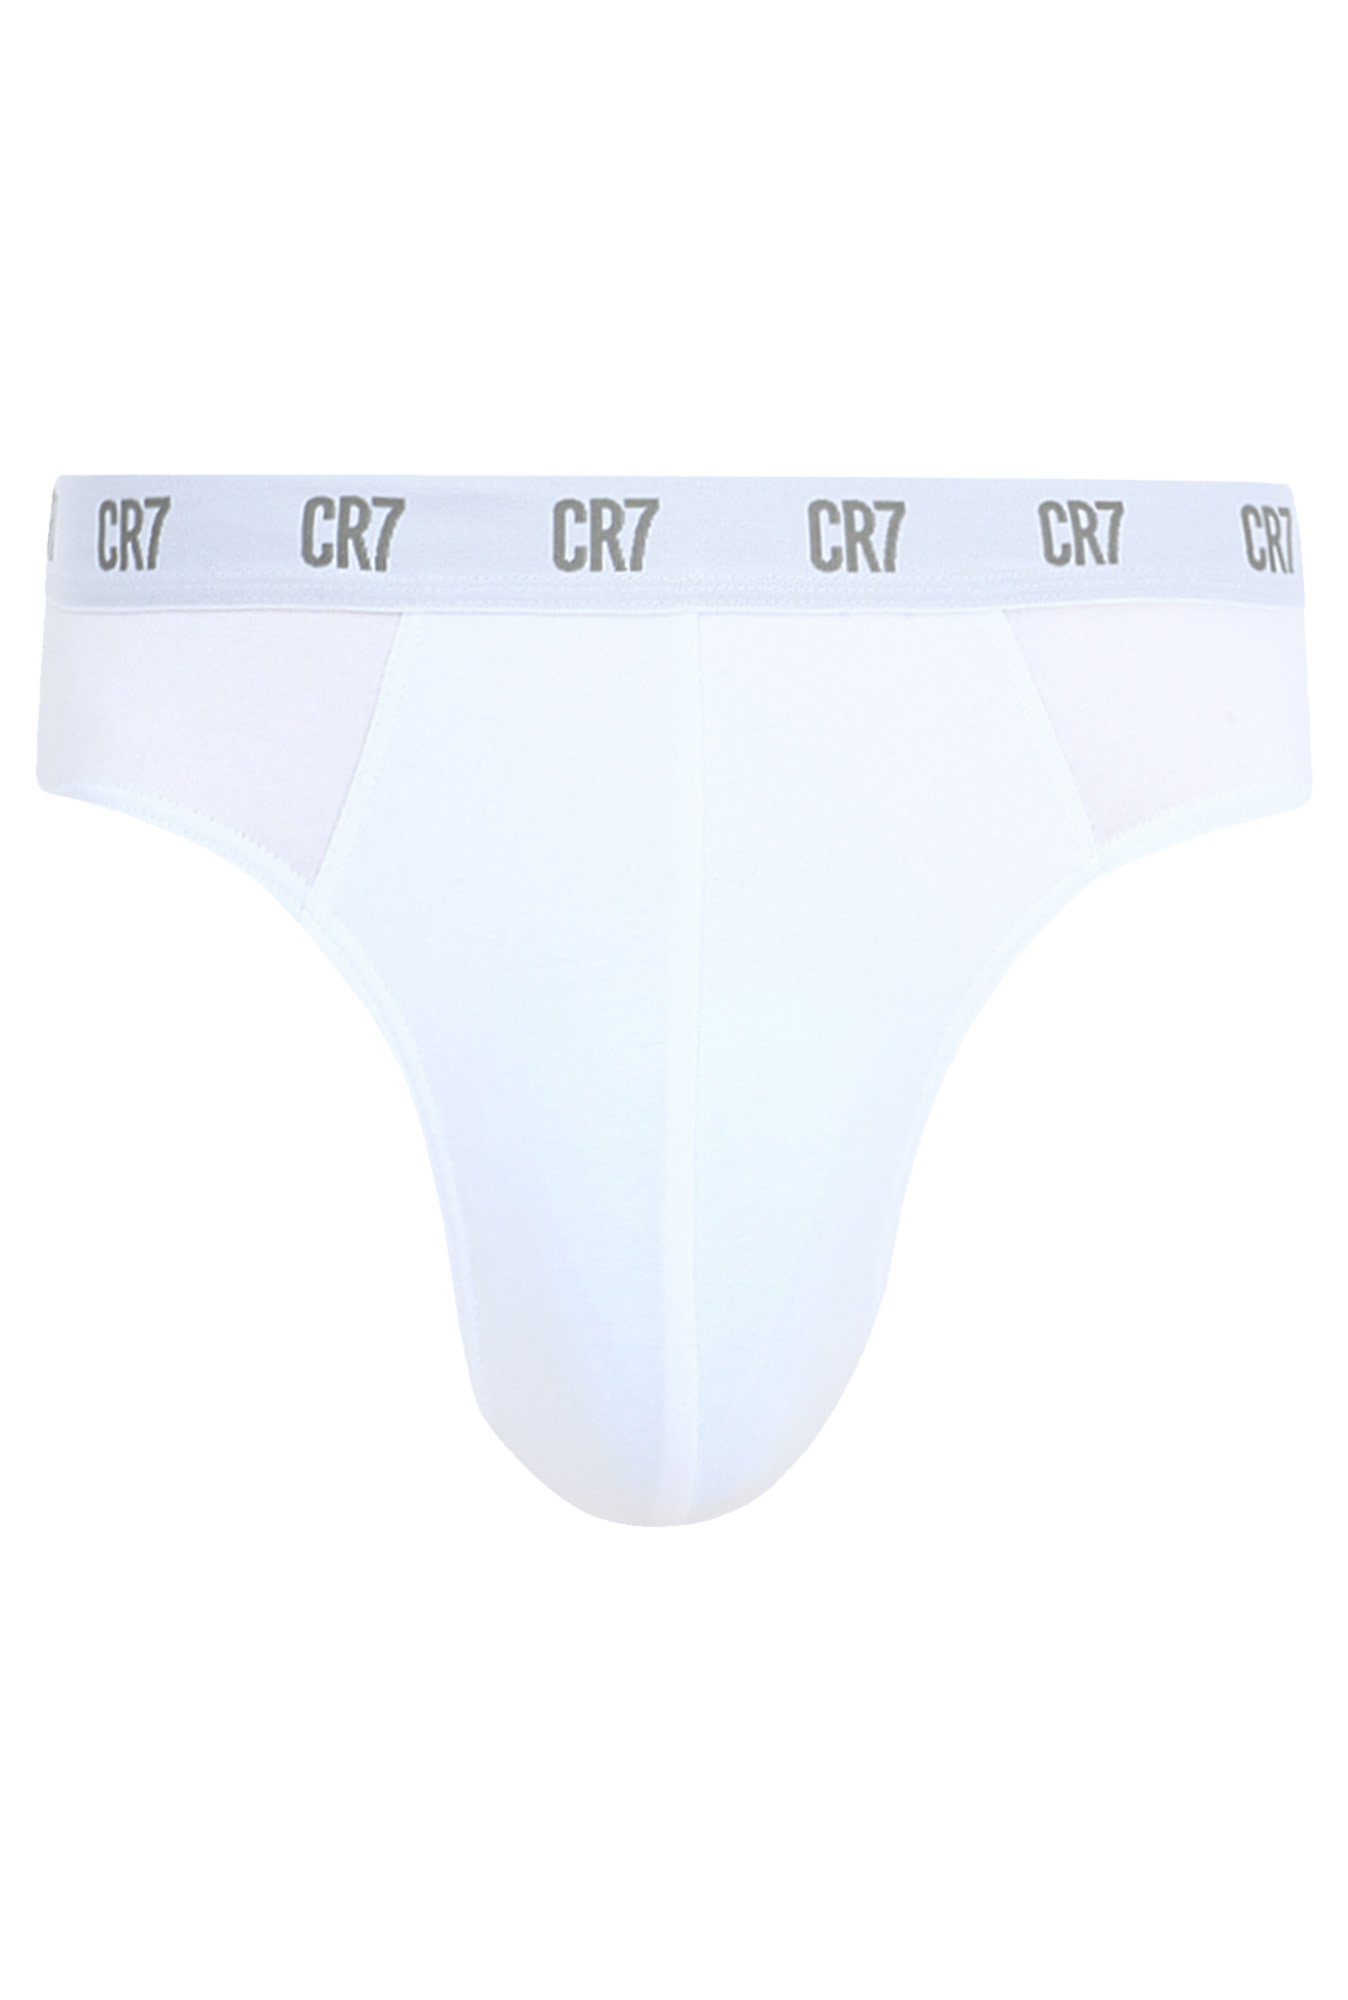 Buy CR7 White Regular Fit Briefs for Men Online @ Tata CLiQ